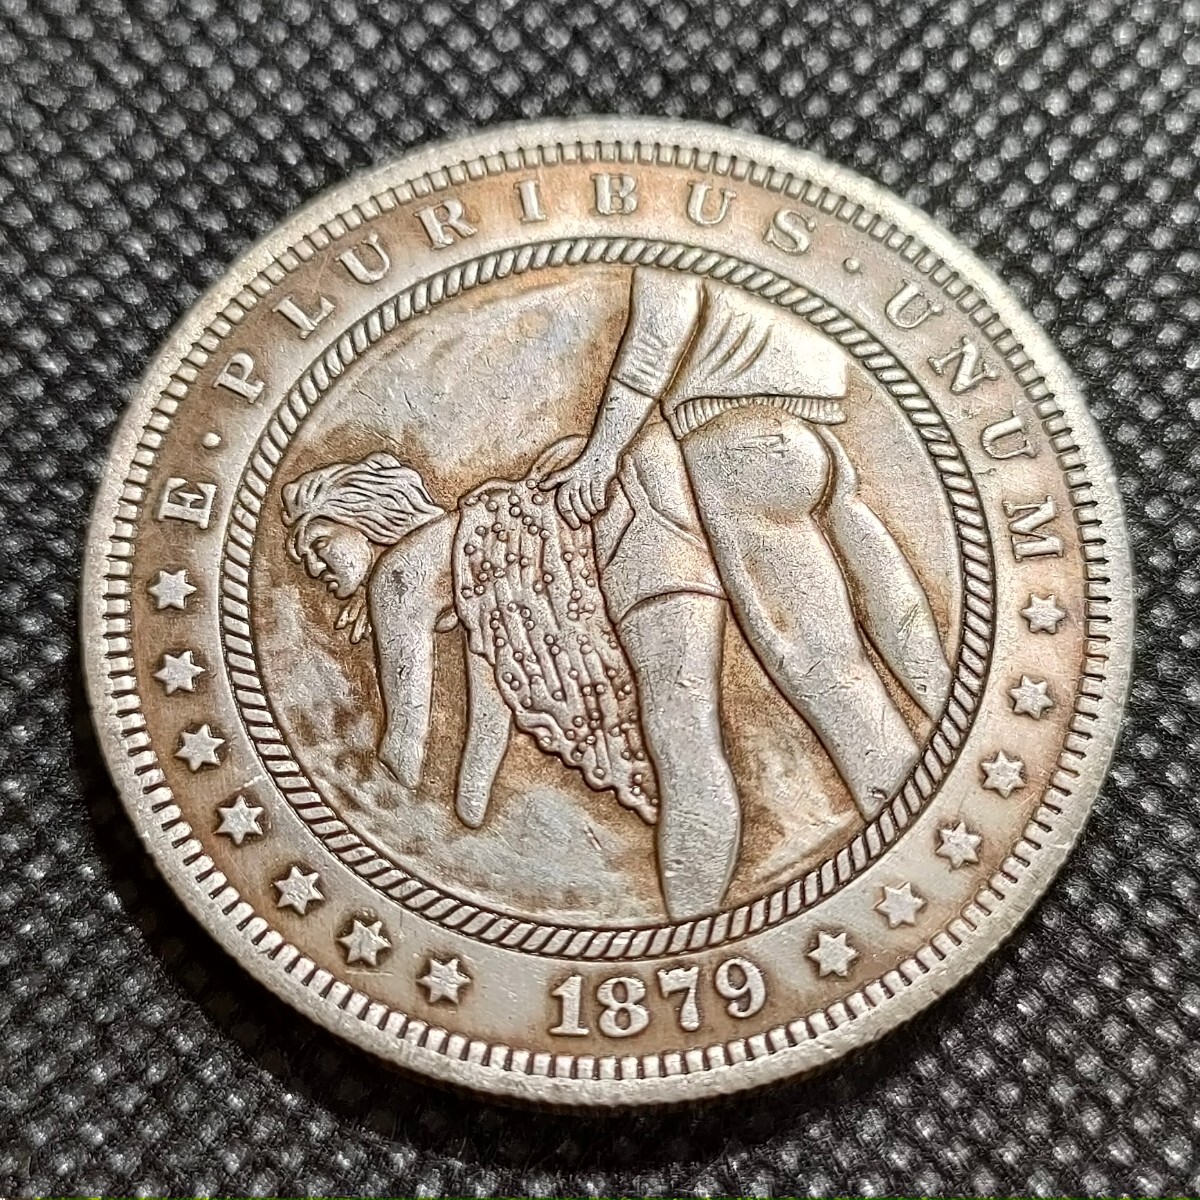 6121 アメリカ古銭 ルンペン 約38mm イーグル チャレンジコイン ゴルフマーカー コイン アンティーク ホーボーの画像1